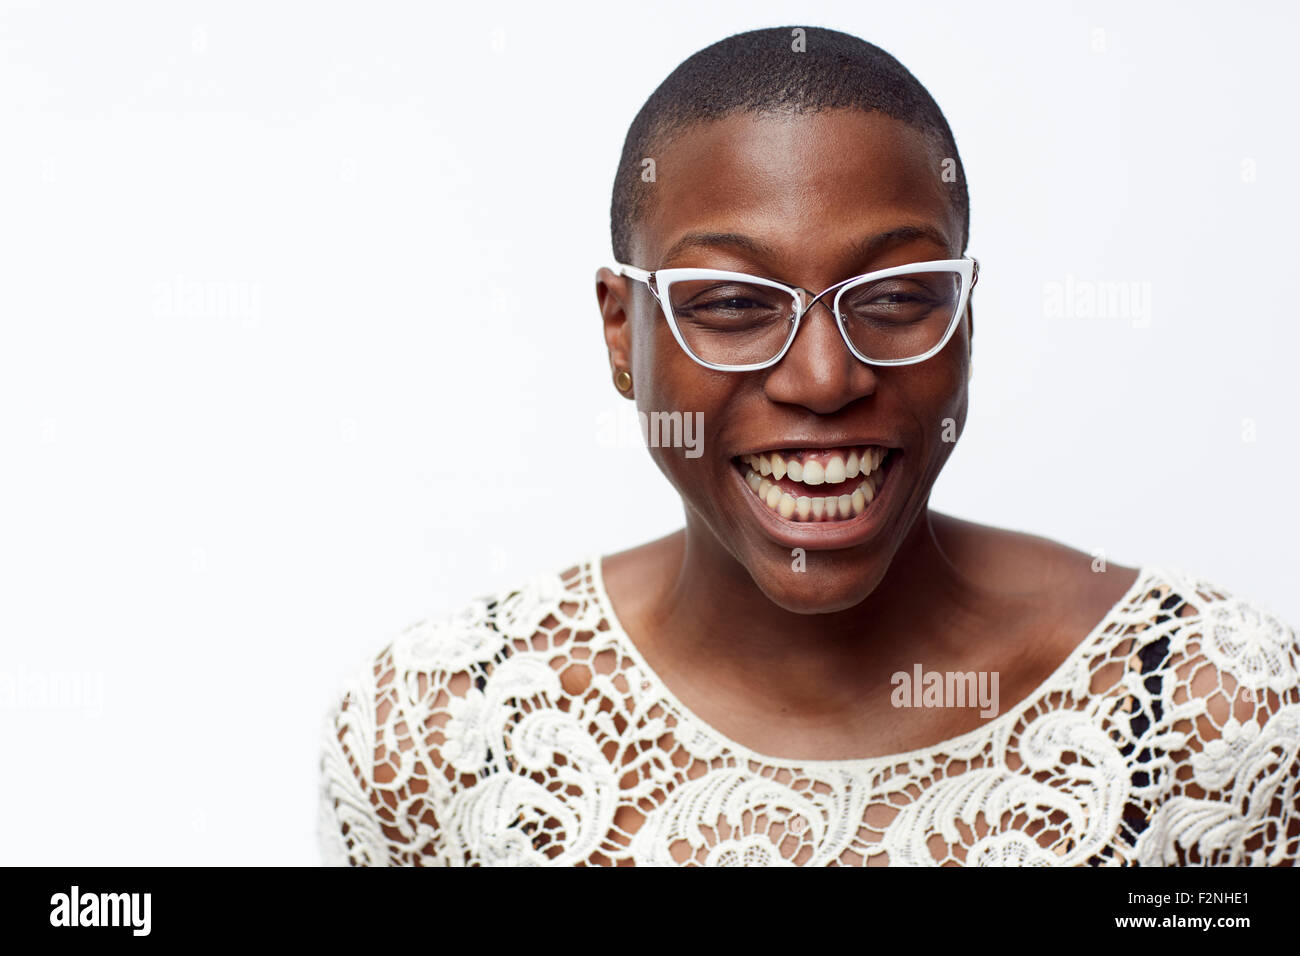 Smiling stylish woman wearing eyeglasses Stock Photo